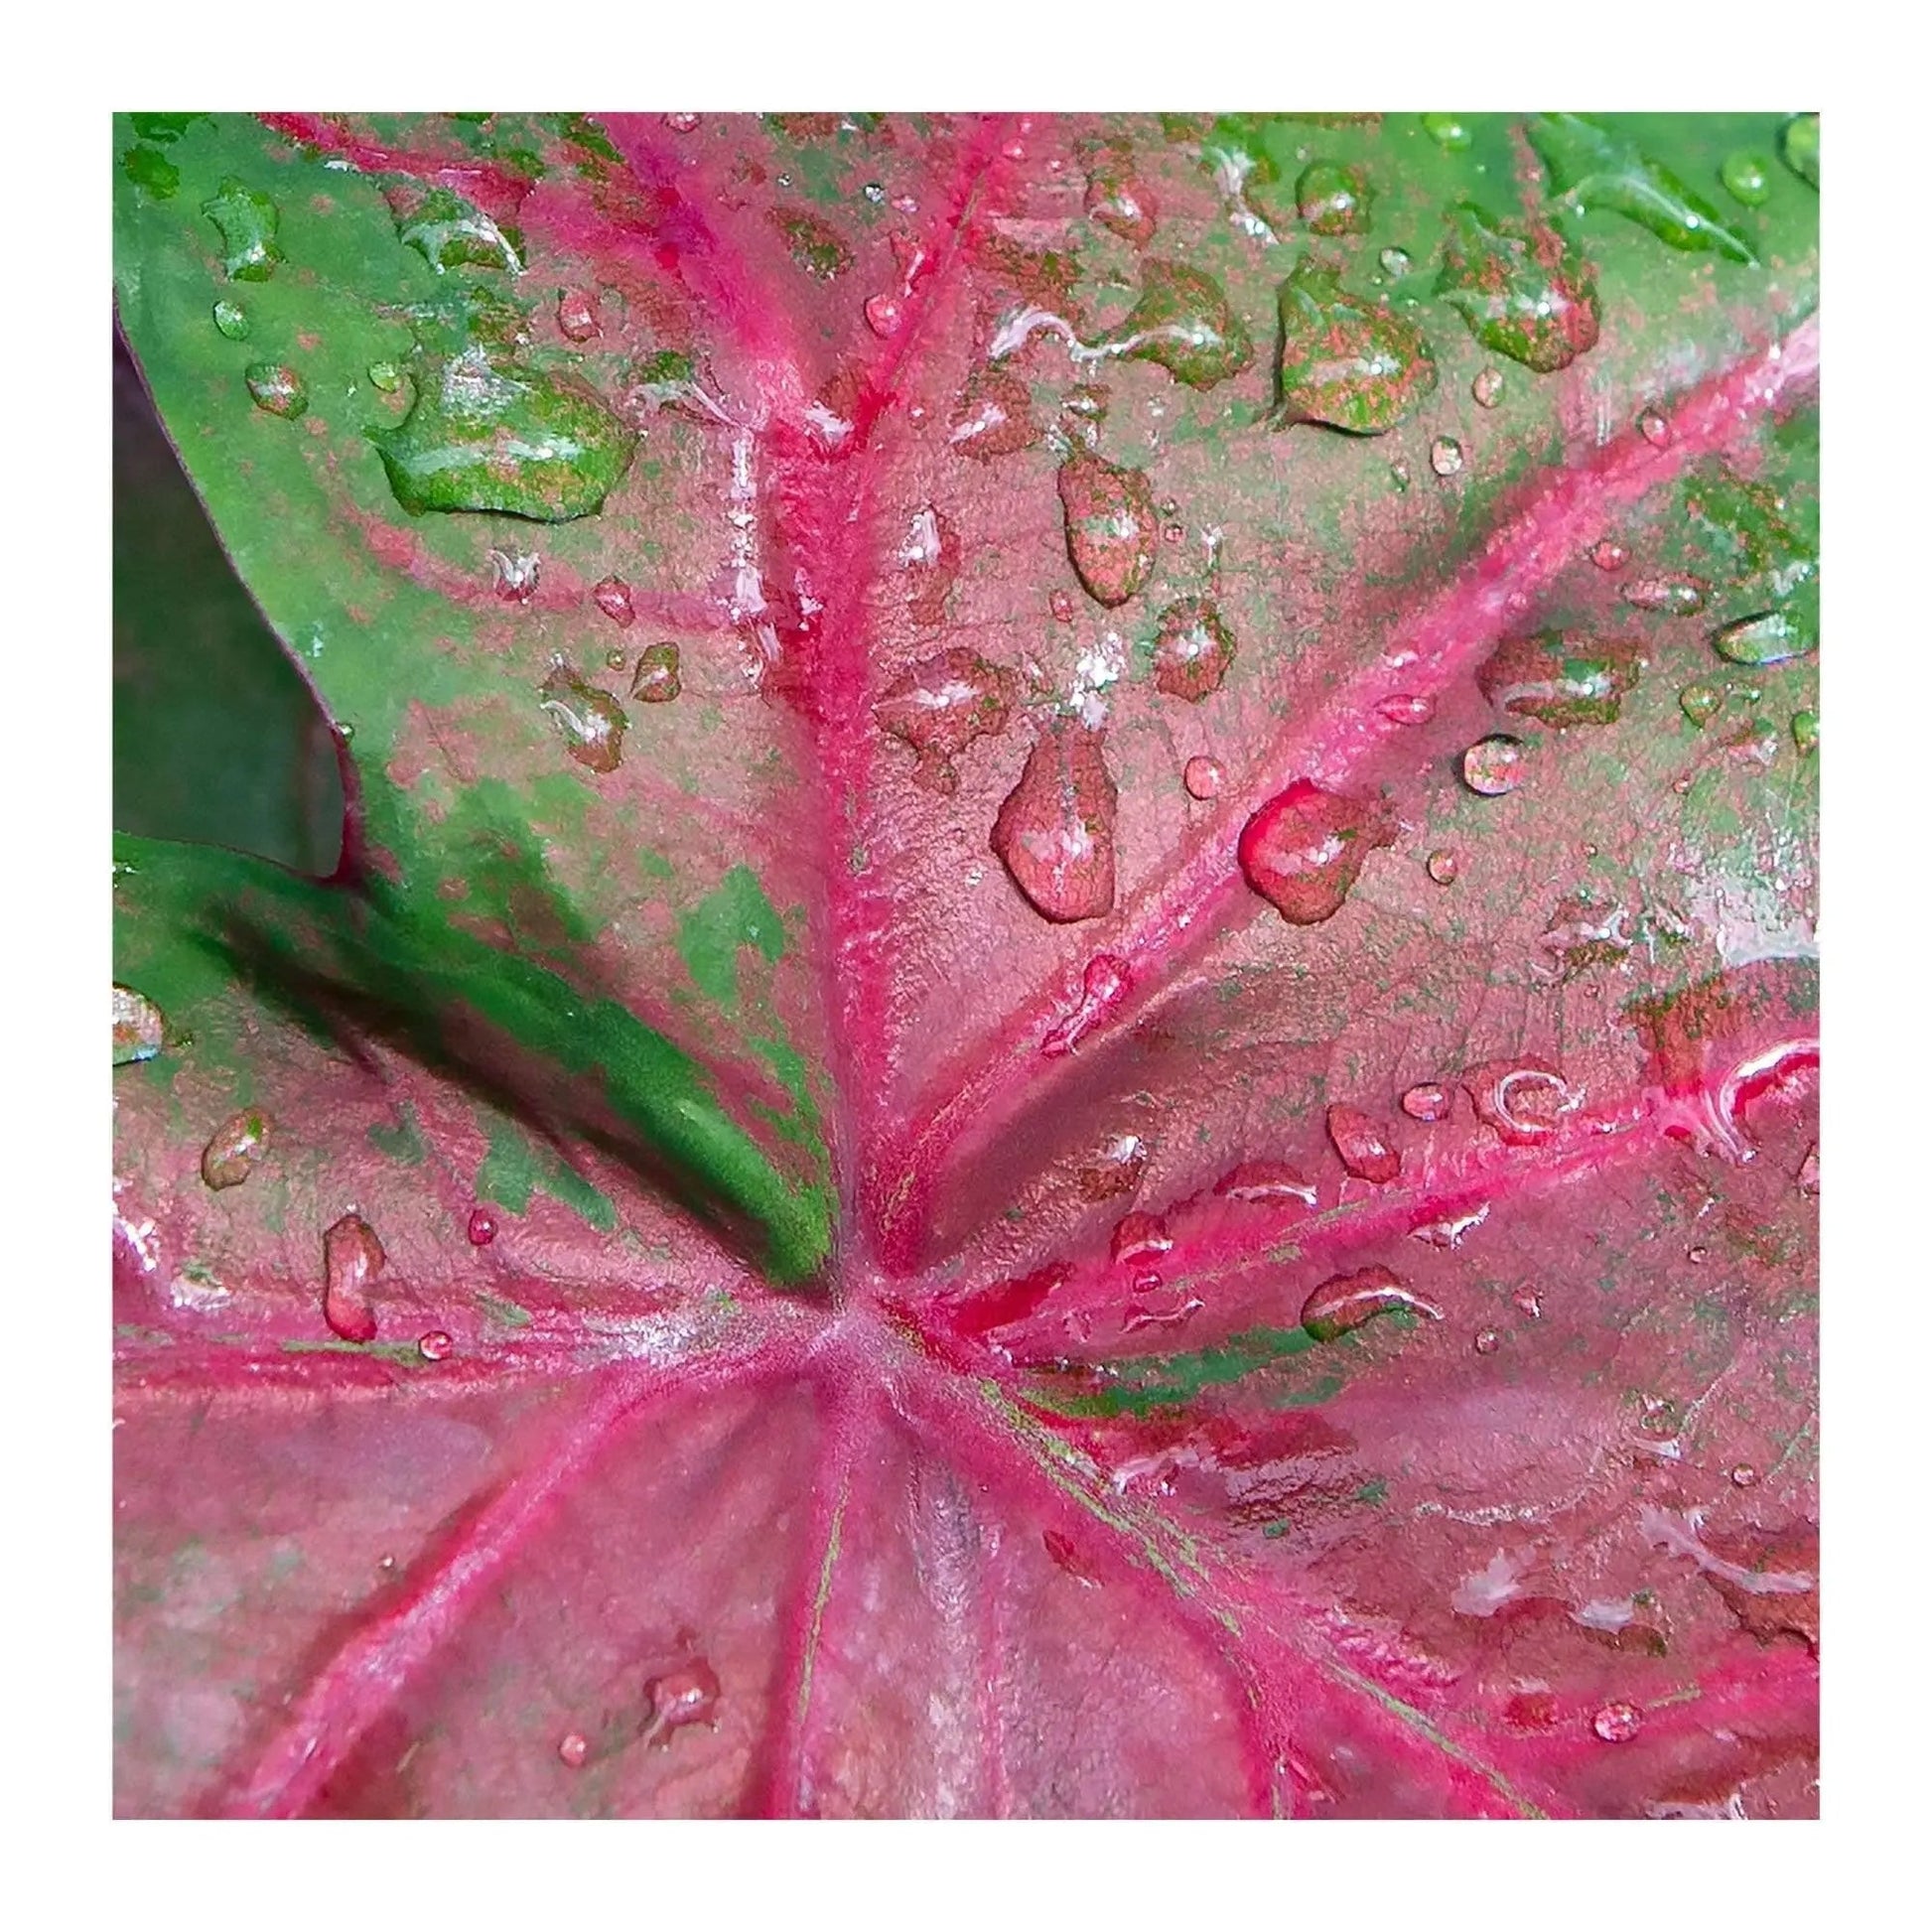 Macro art of wet caladium leaf